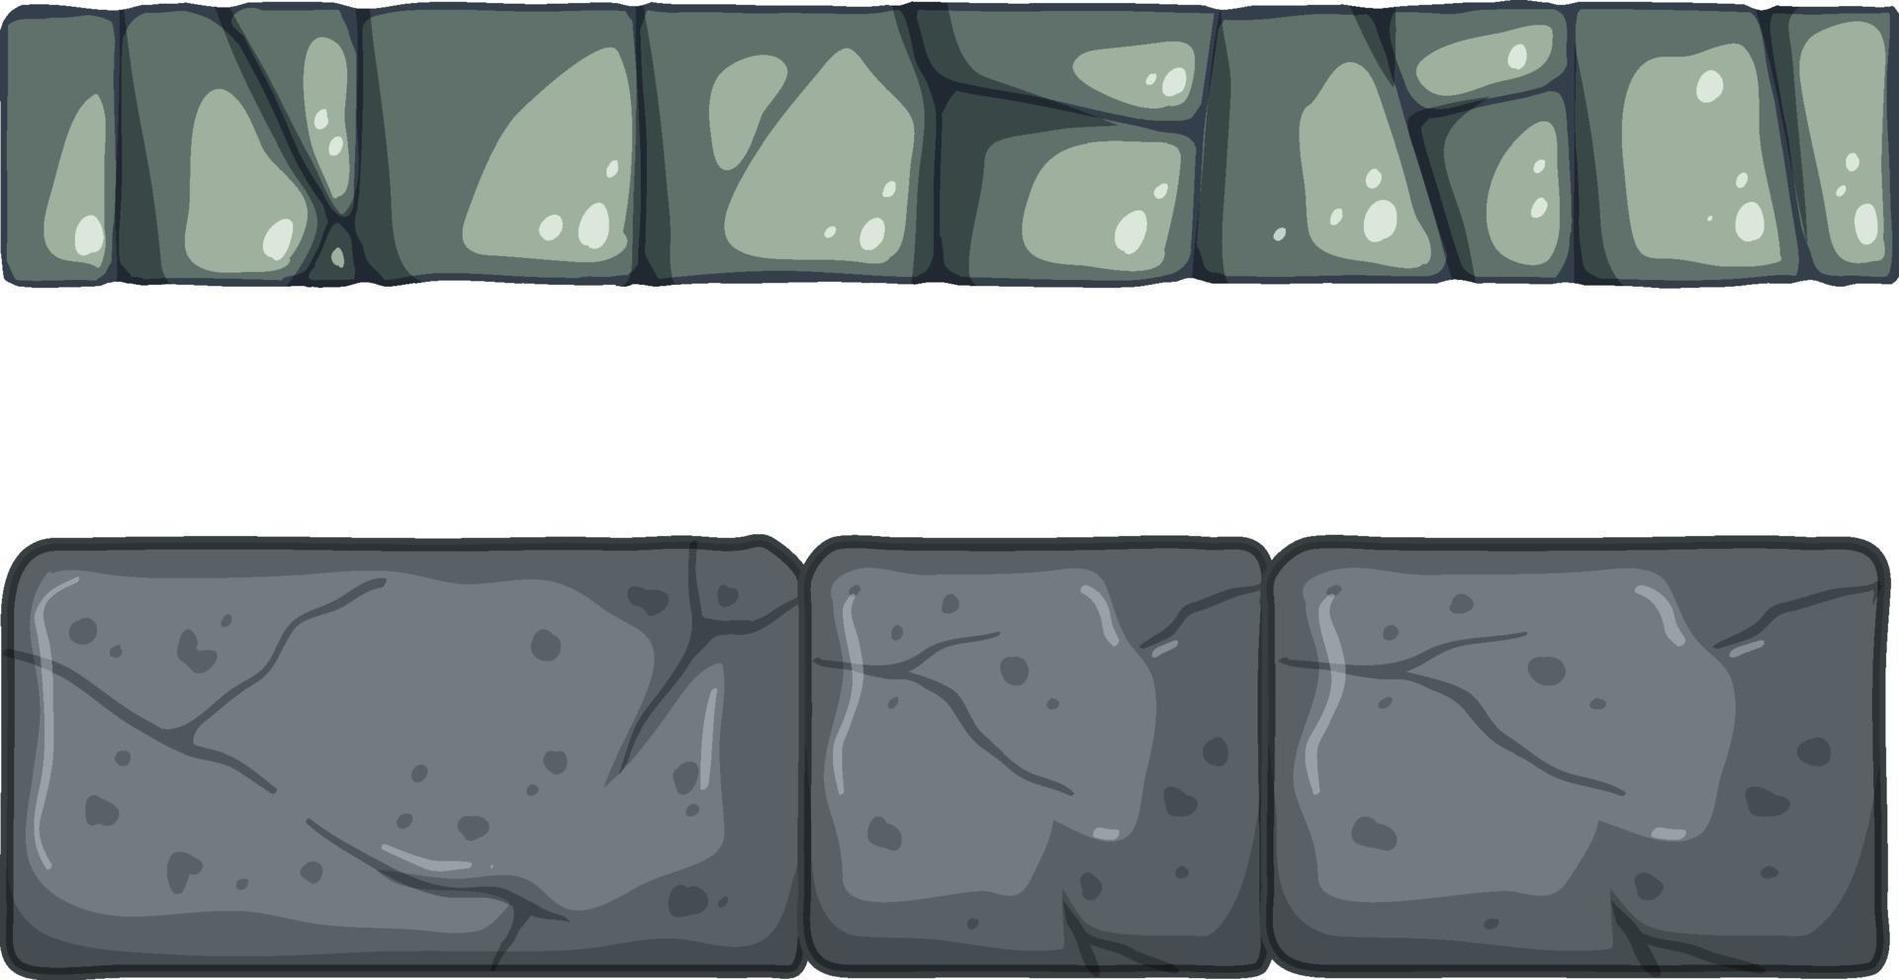 steen tegels textuur in cartoon-stijl vector